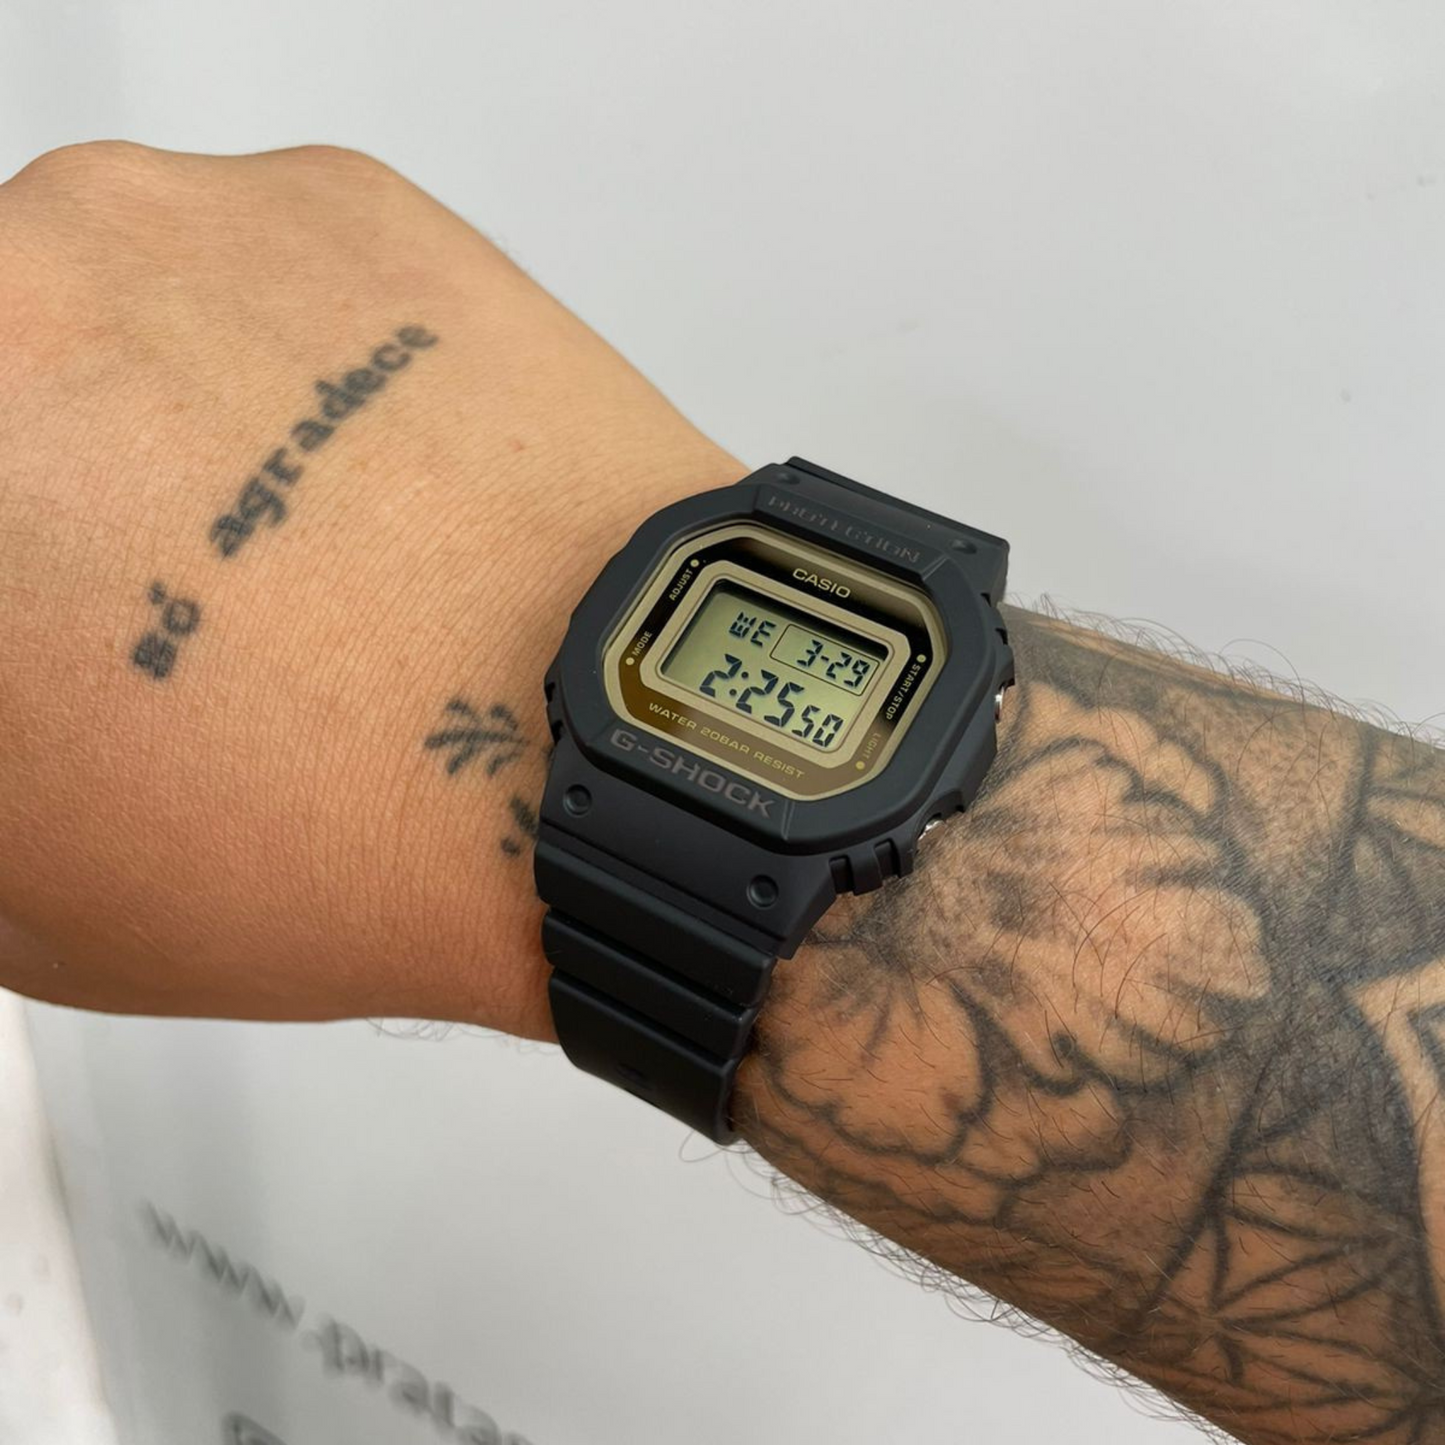 Reloj G-Shock Digital GMD-S5600-1DR